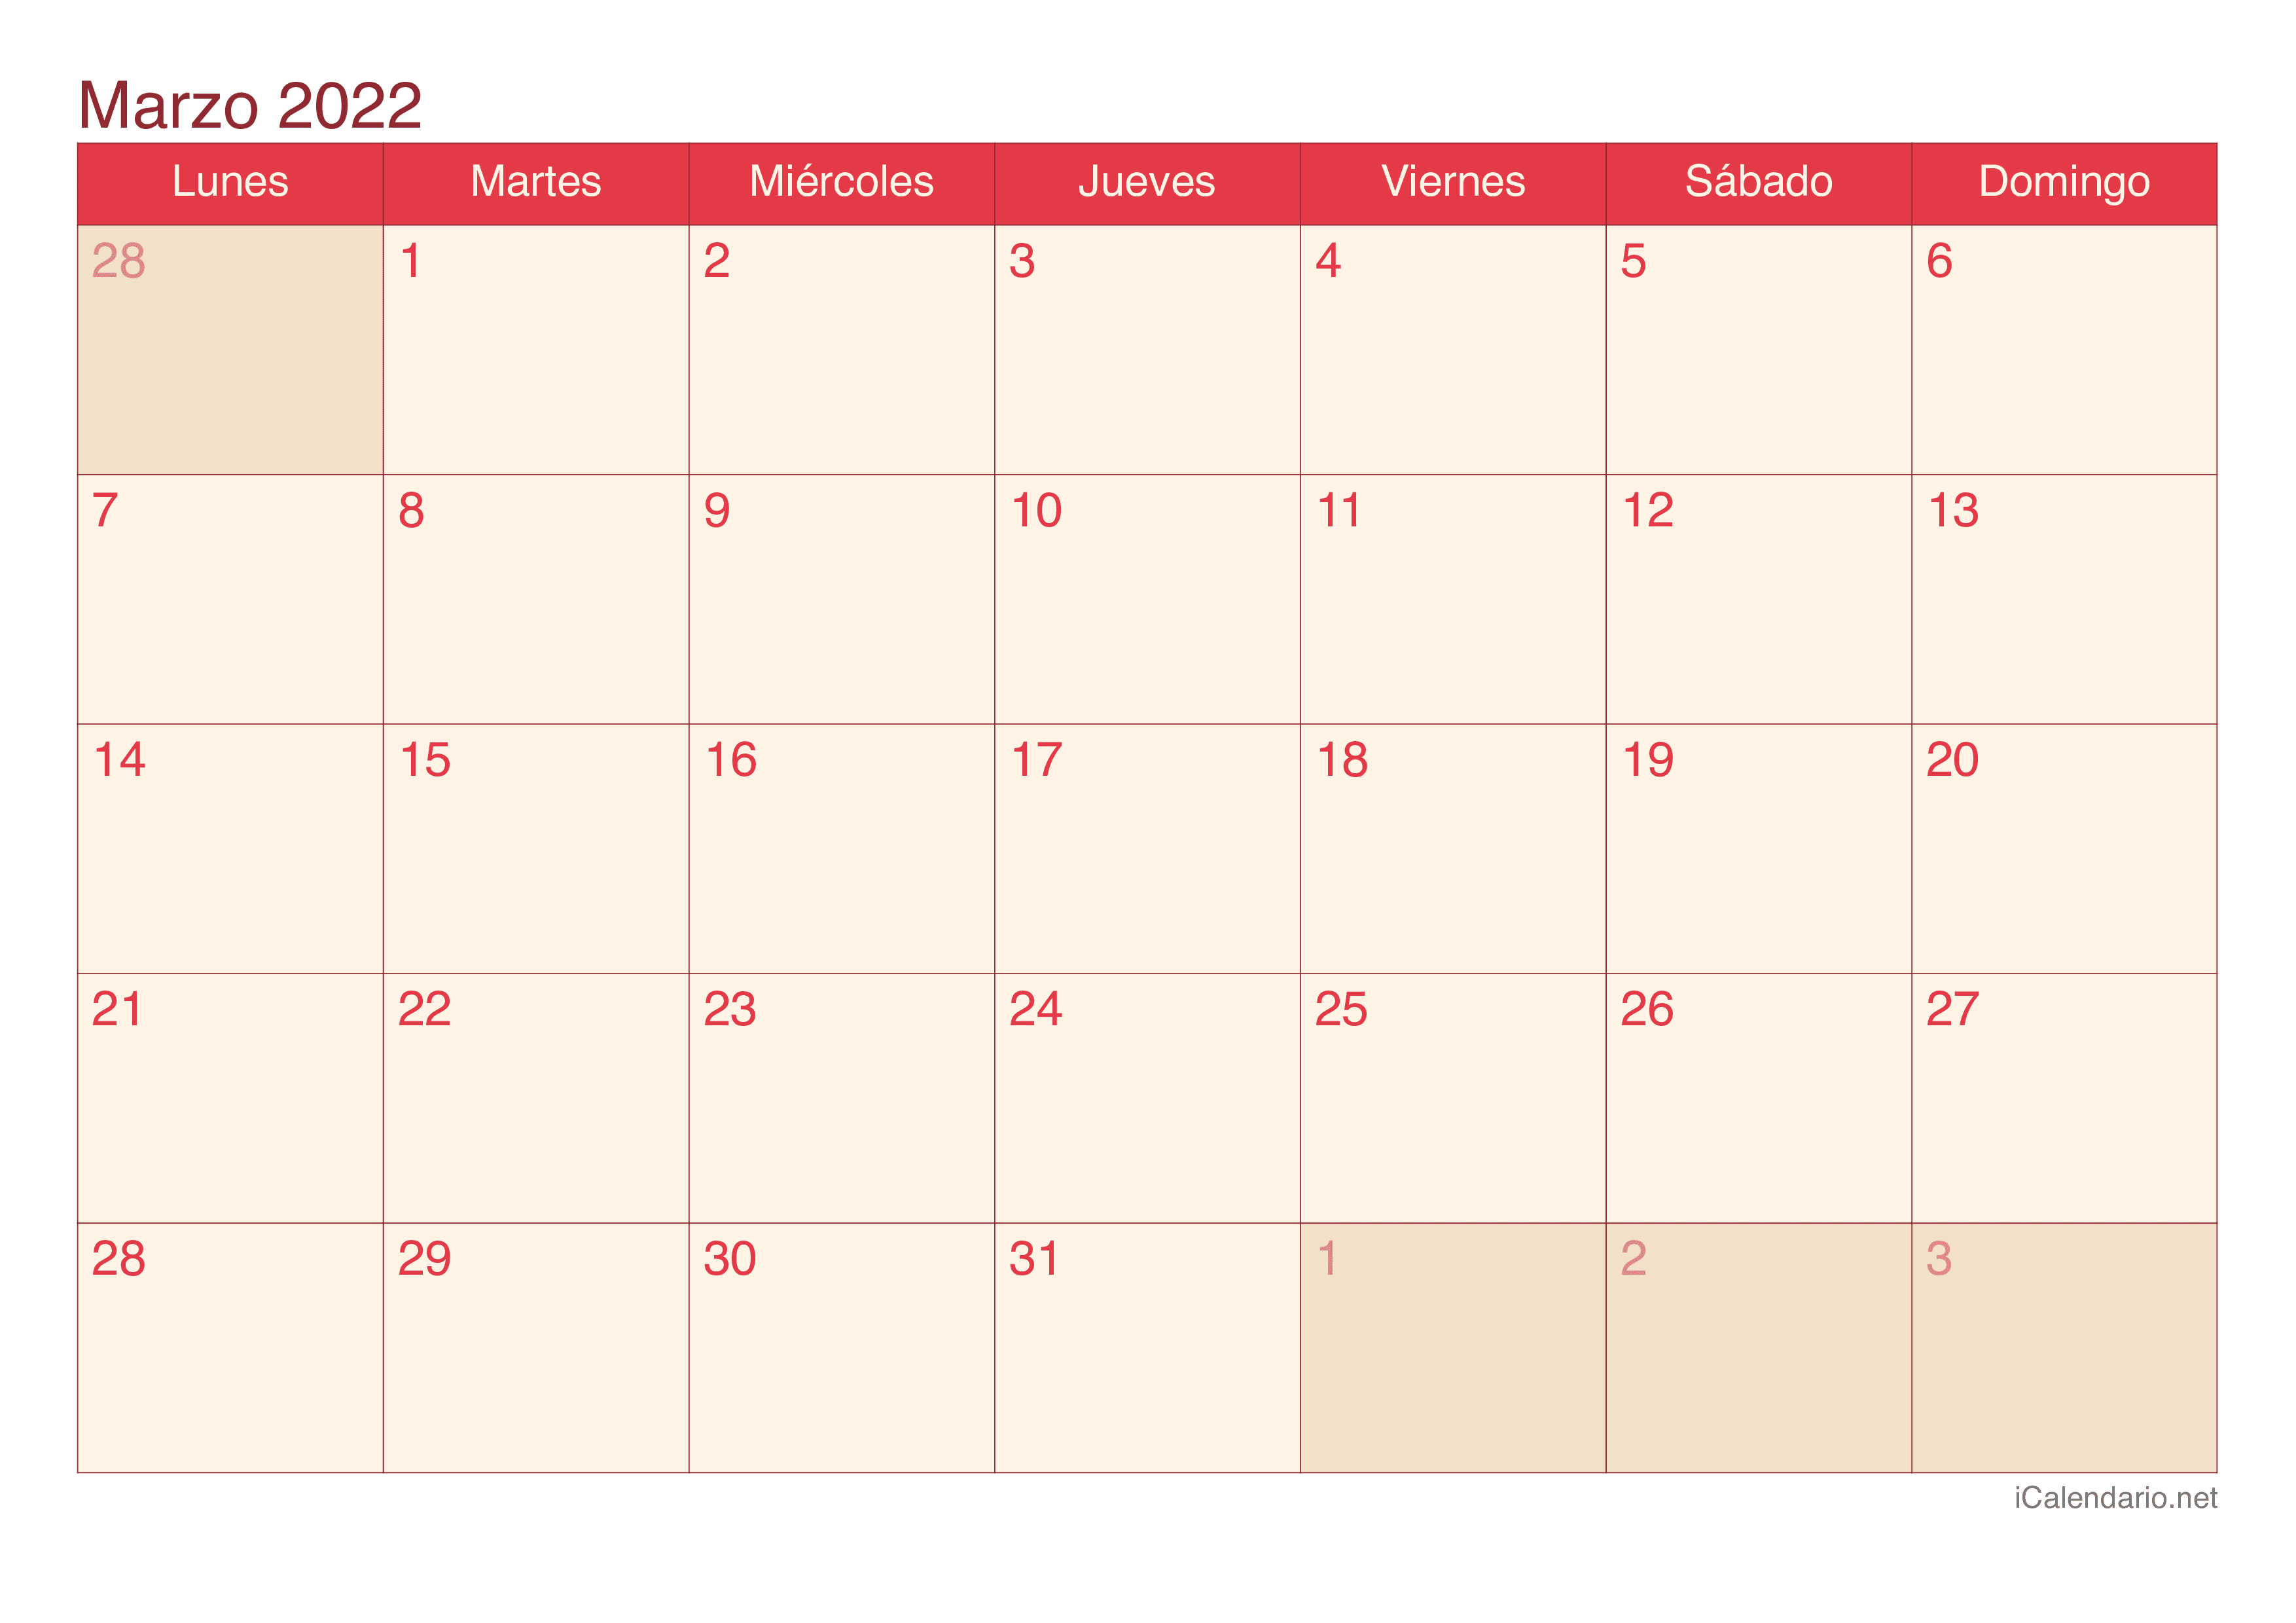 Calendario de marzo 2022 - Cherry